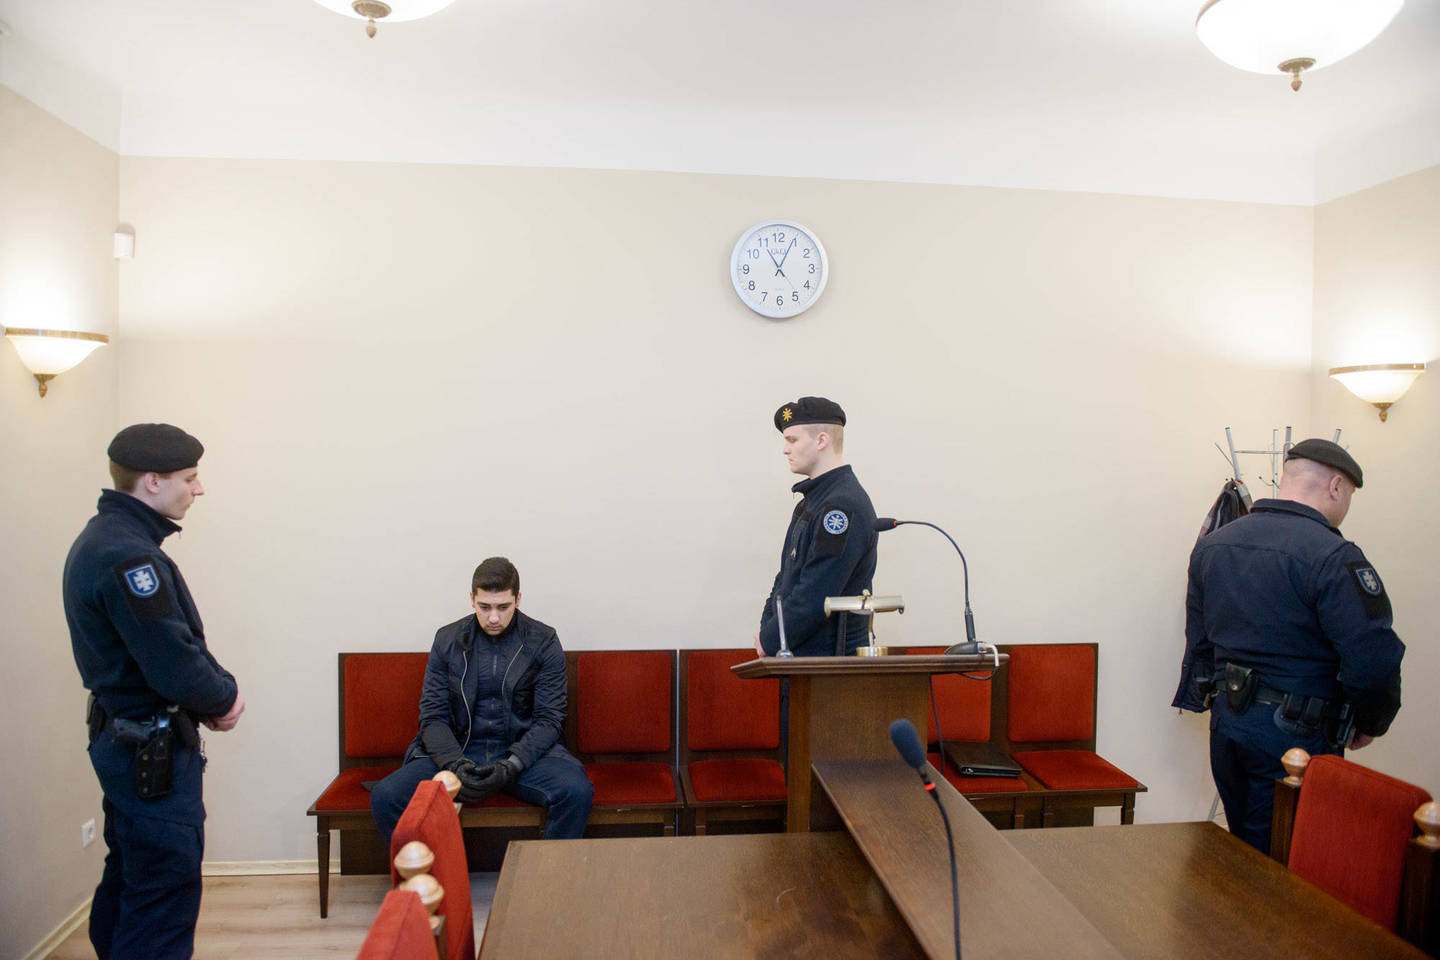  Vilniaus apygardos teismas (VAT) ketvirtadienį nuo ankstaus ryto sprendžia, ar verta ilgiau laikyti už grotų Ievos Strazdauskaitės  nužudymu įtariamus pusbrolius 24 metų Karolį, 26 metų Leoną ir 23 metų Mantą Bieliauskus. <br> J.Stacevičiaus nuotr.